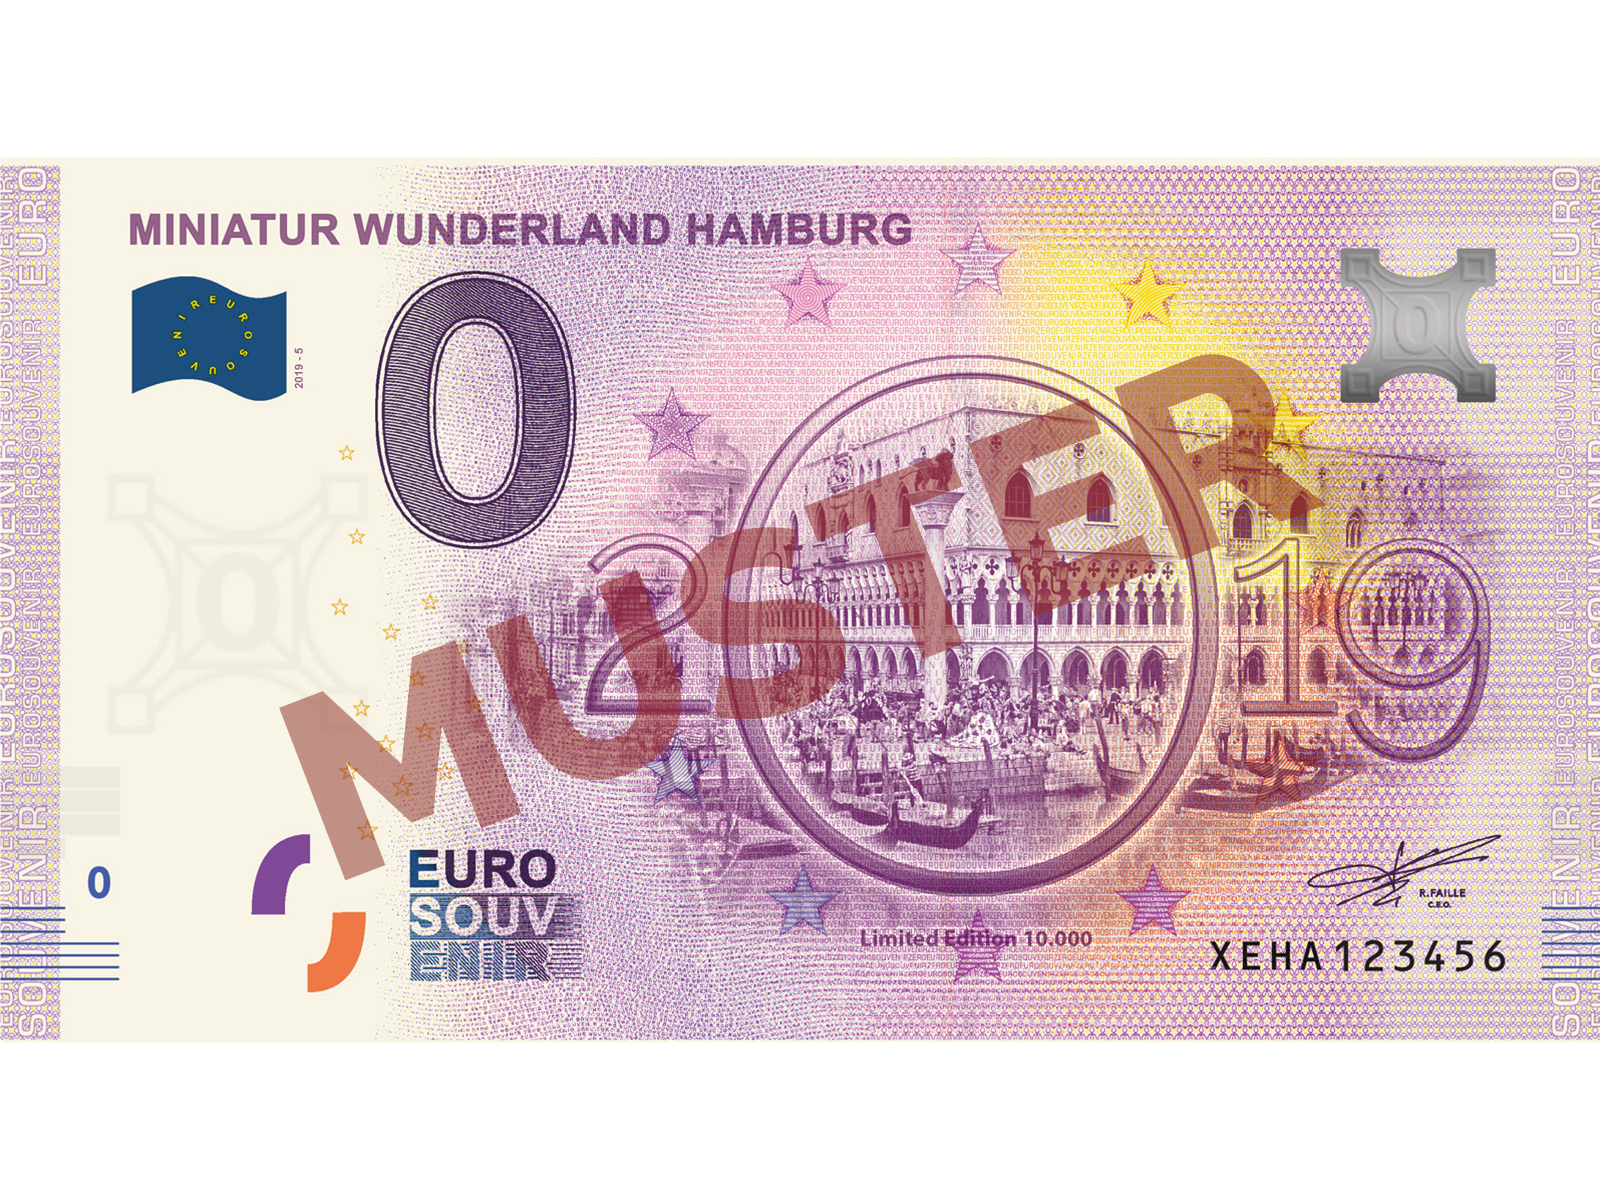 2020//13 Souvenir Null Euro /€ Sammler 0-Euro-Schein Hamburg Miniatur Wunderland Motiv Feuerwehr